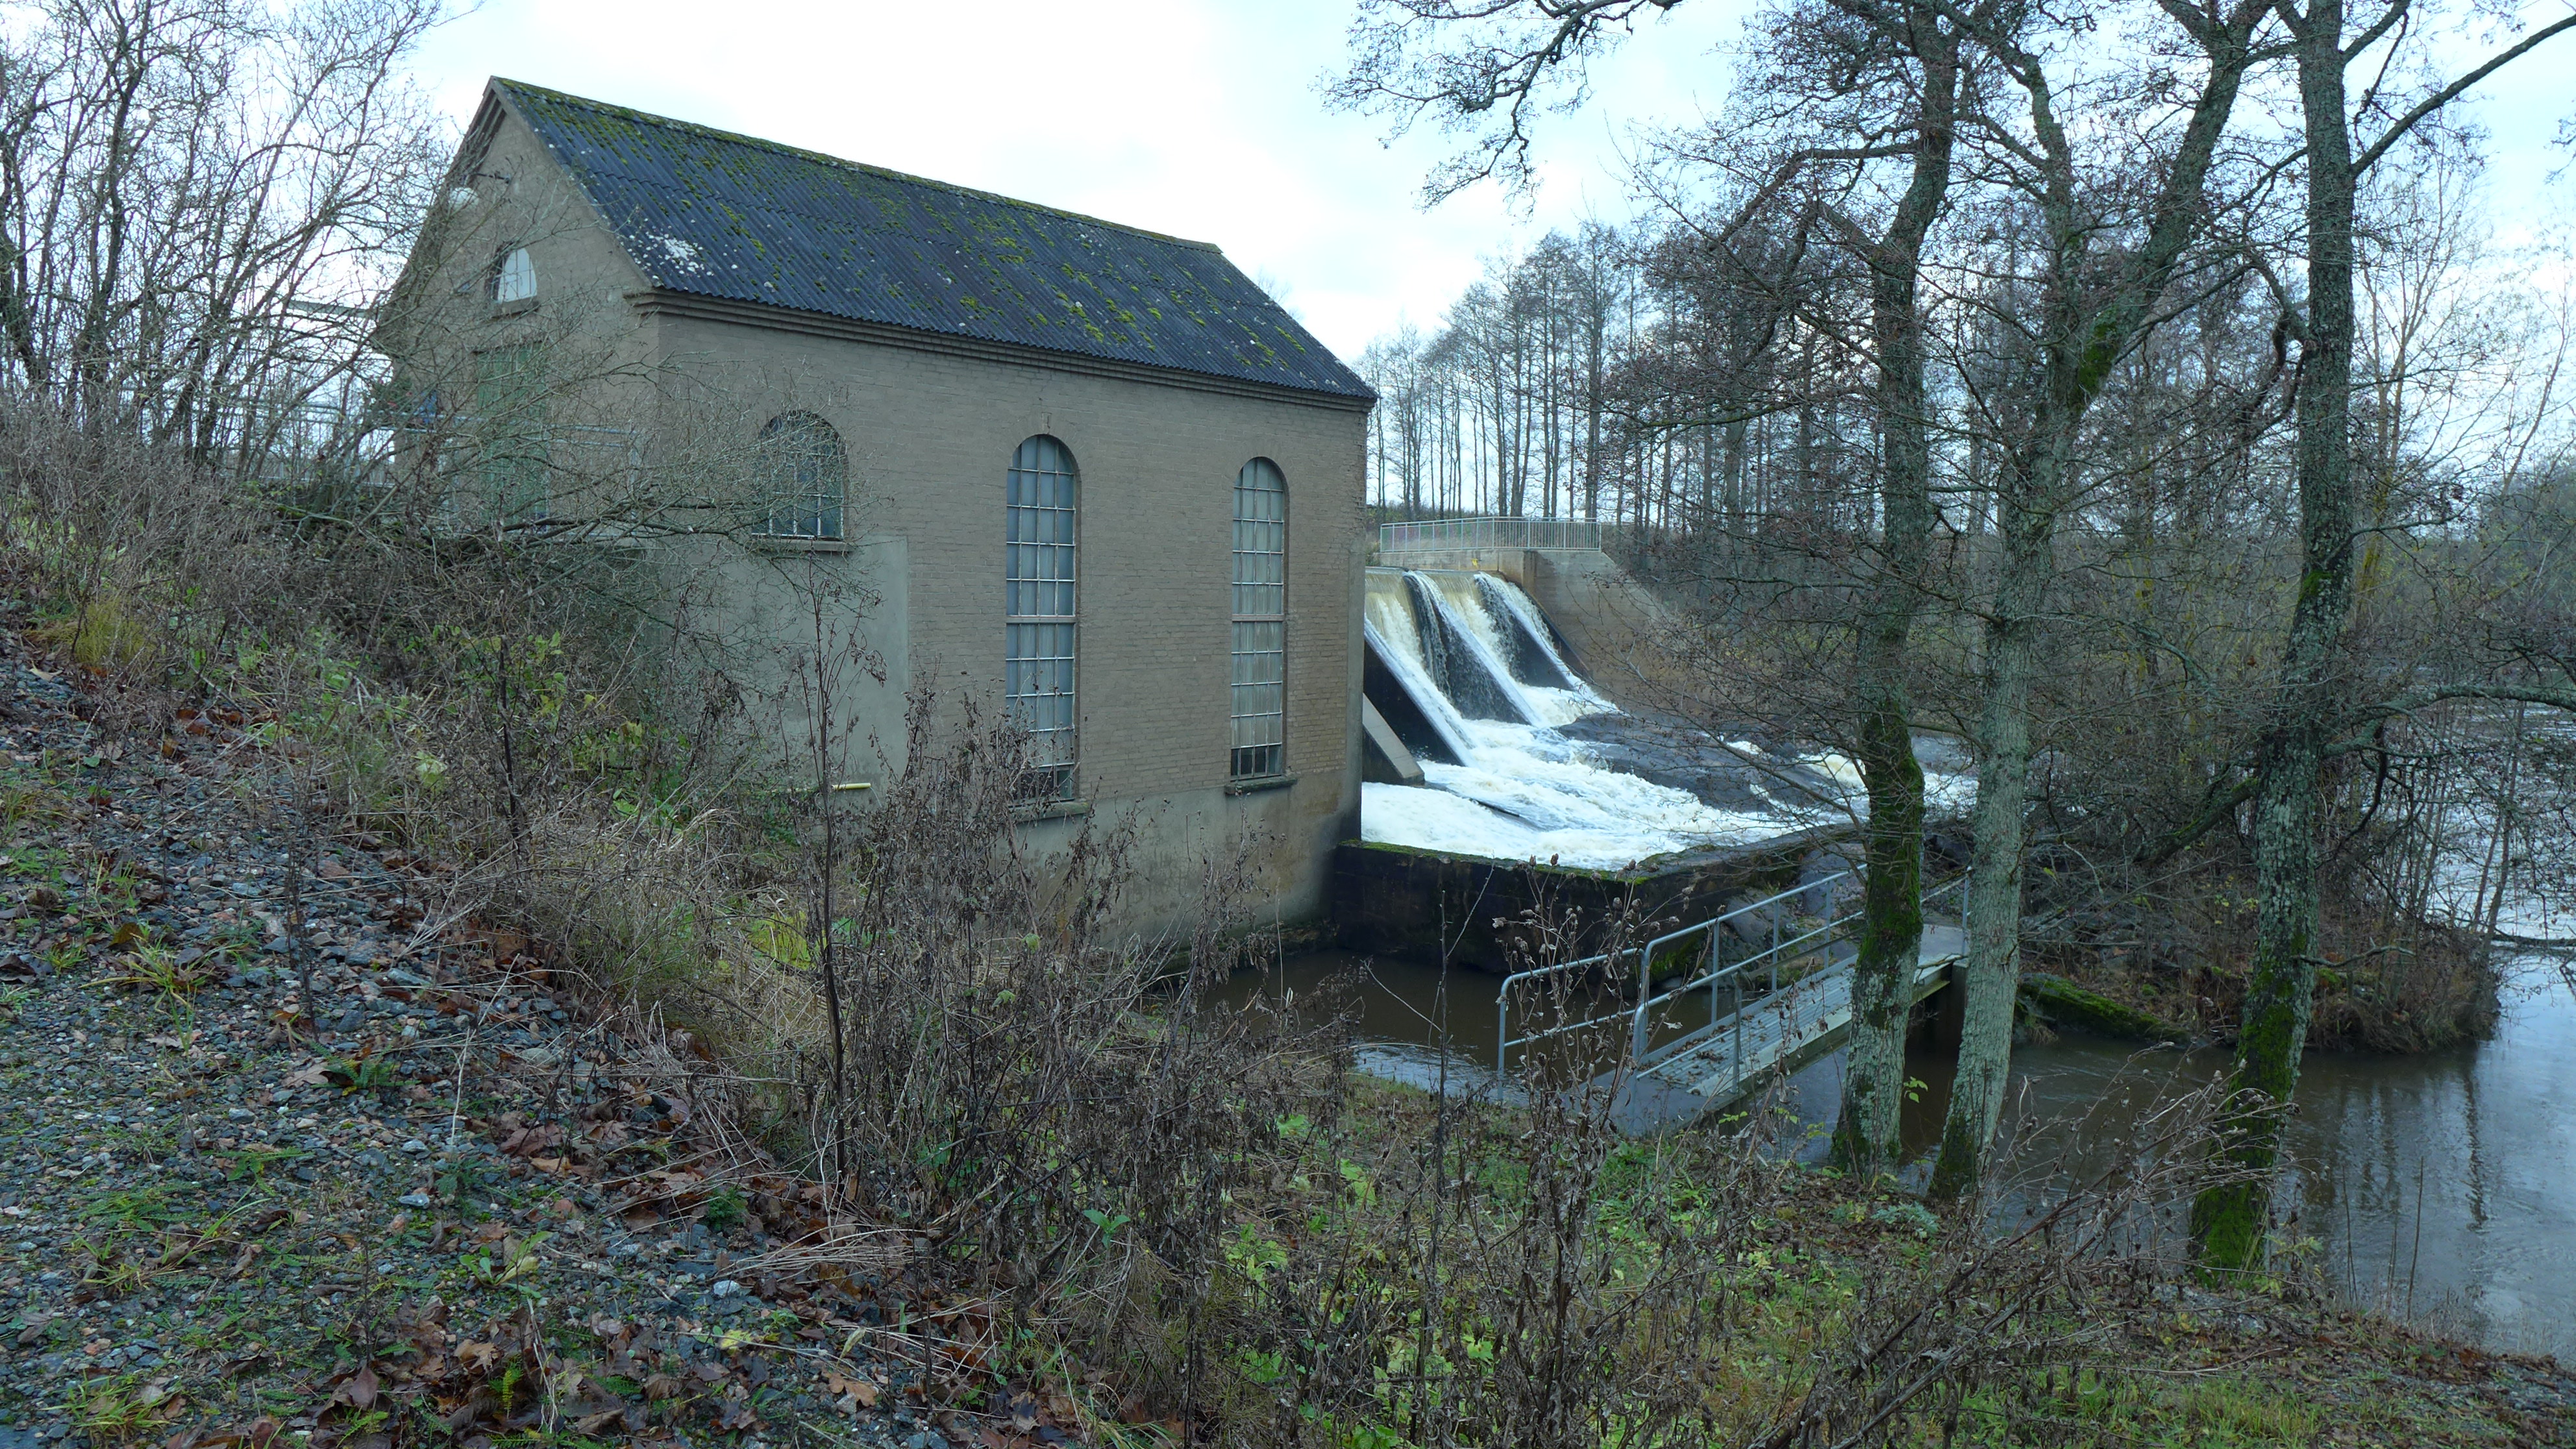 Staka kraftverk är uppfört 1934 vid ån Flian. Dammen är en nybyggd överfallsdamm av betong.
